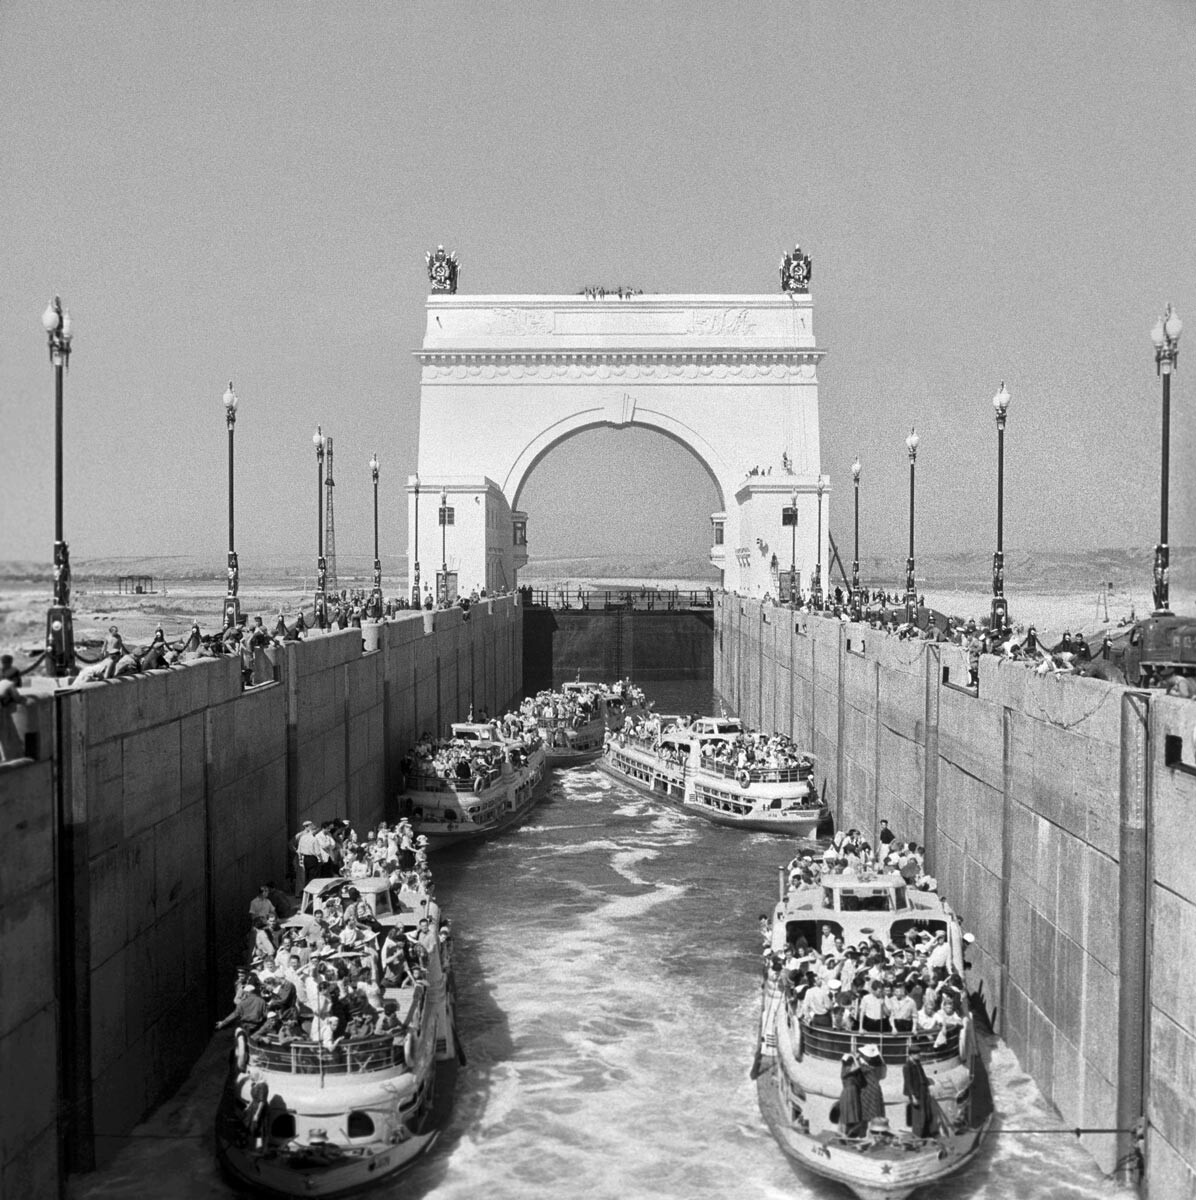 La región de Stalingrado. Julio de 1952. Barcos en la cámara de la esclusa nº 13 del canal Volga-Don. Se desconoce la fecha exacta de la fotografía.